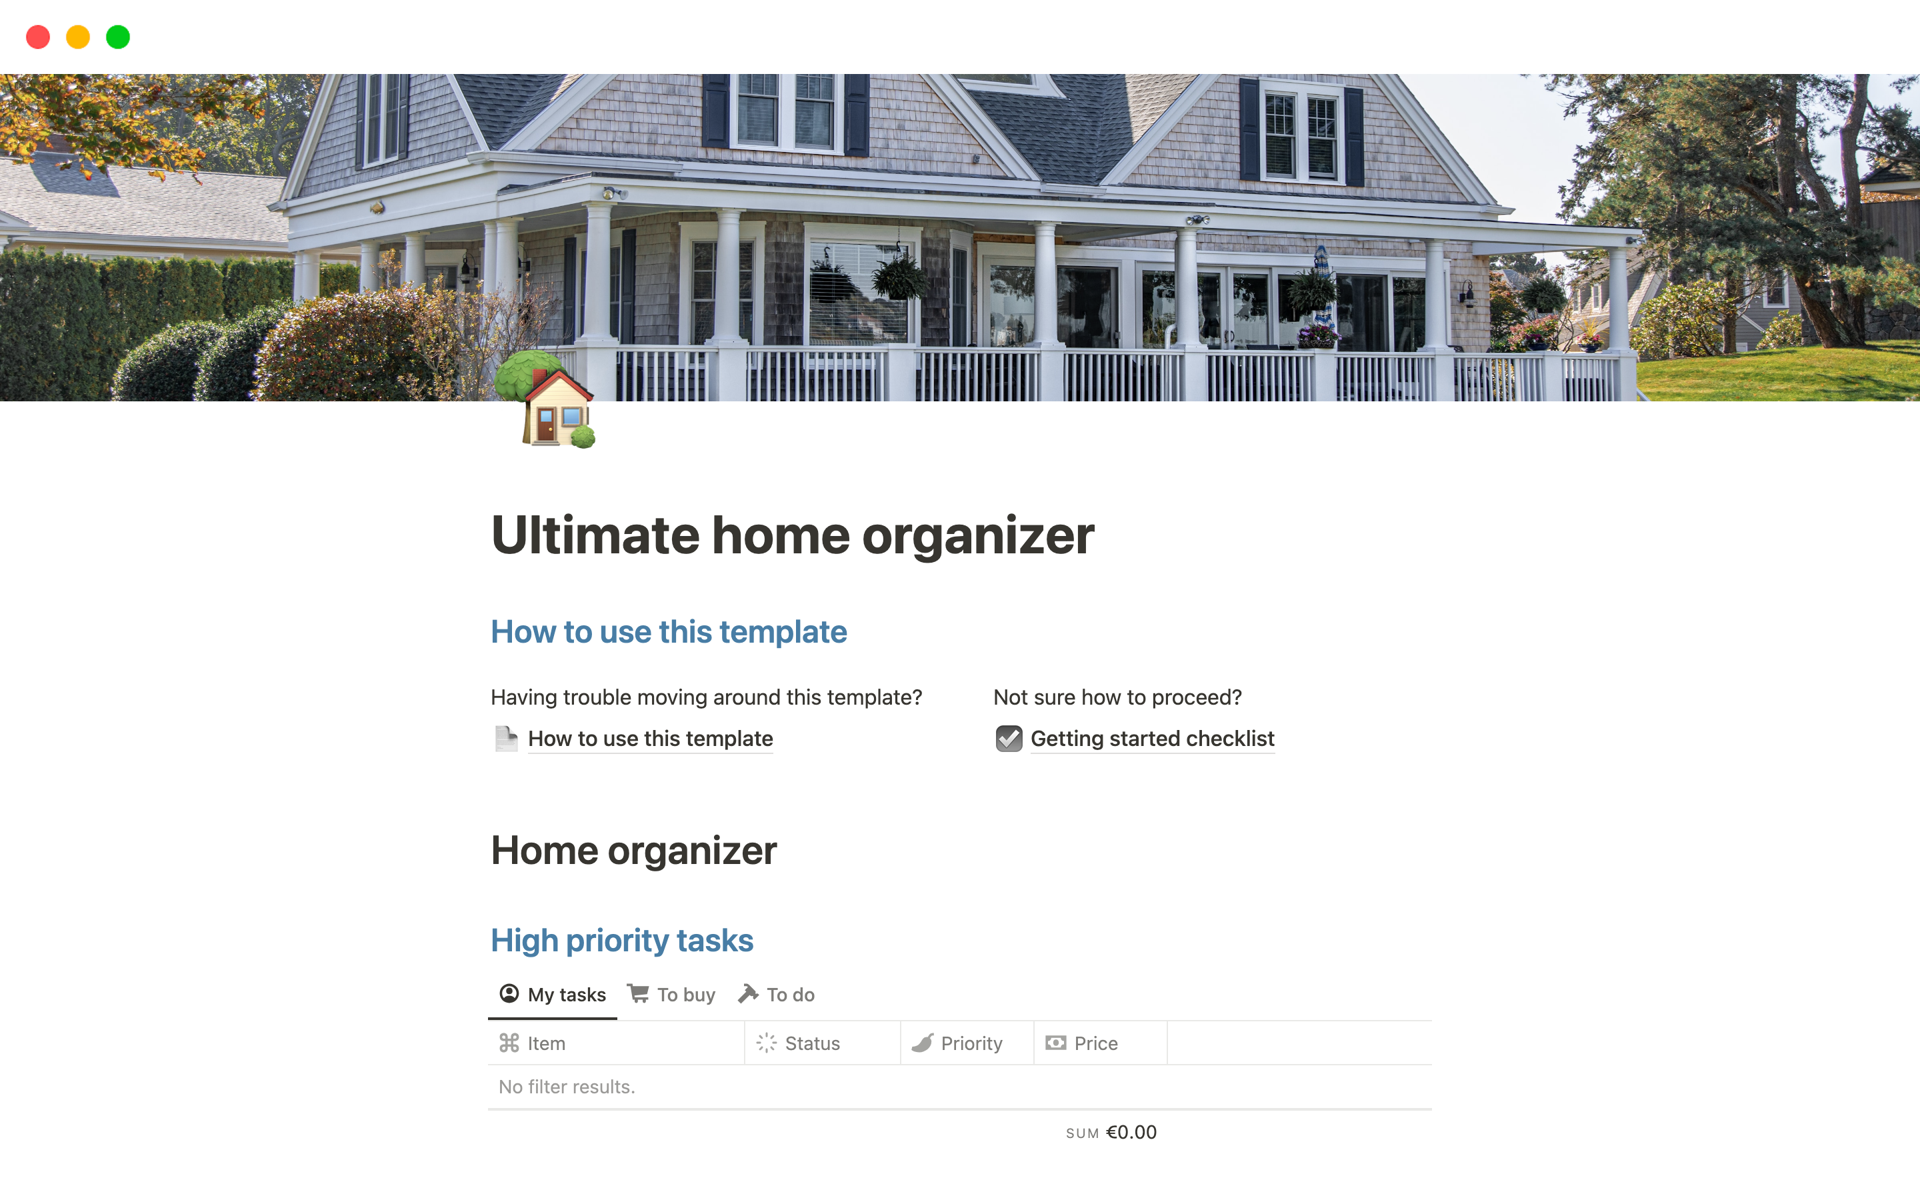 Uma prévia do modelo para Ultimate home organizer